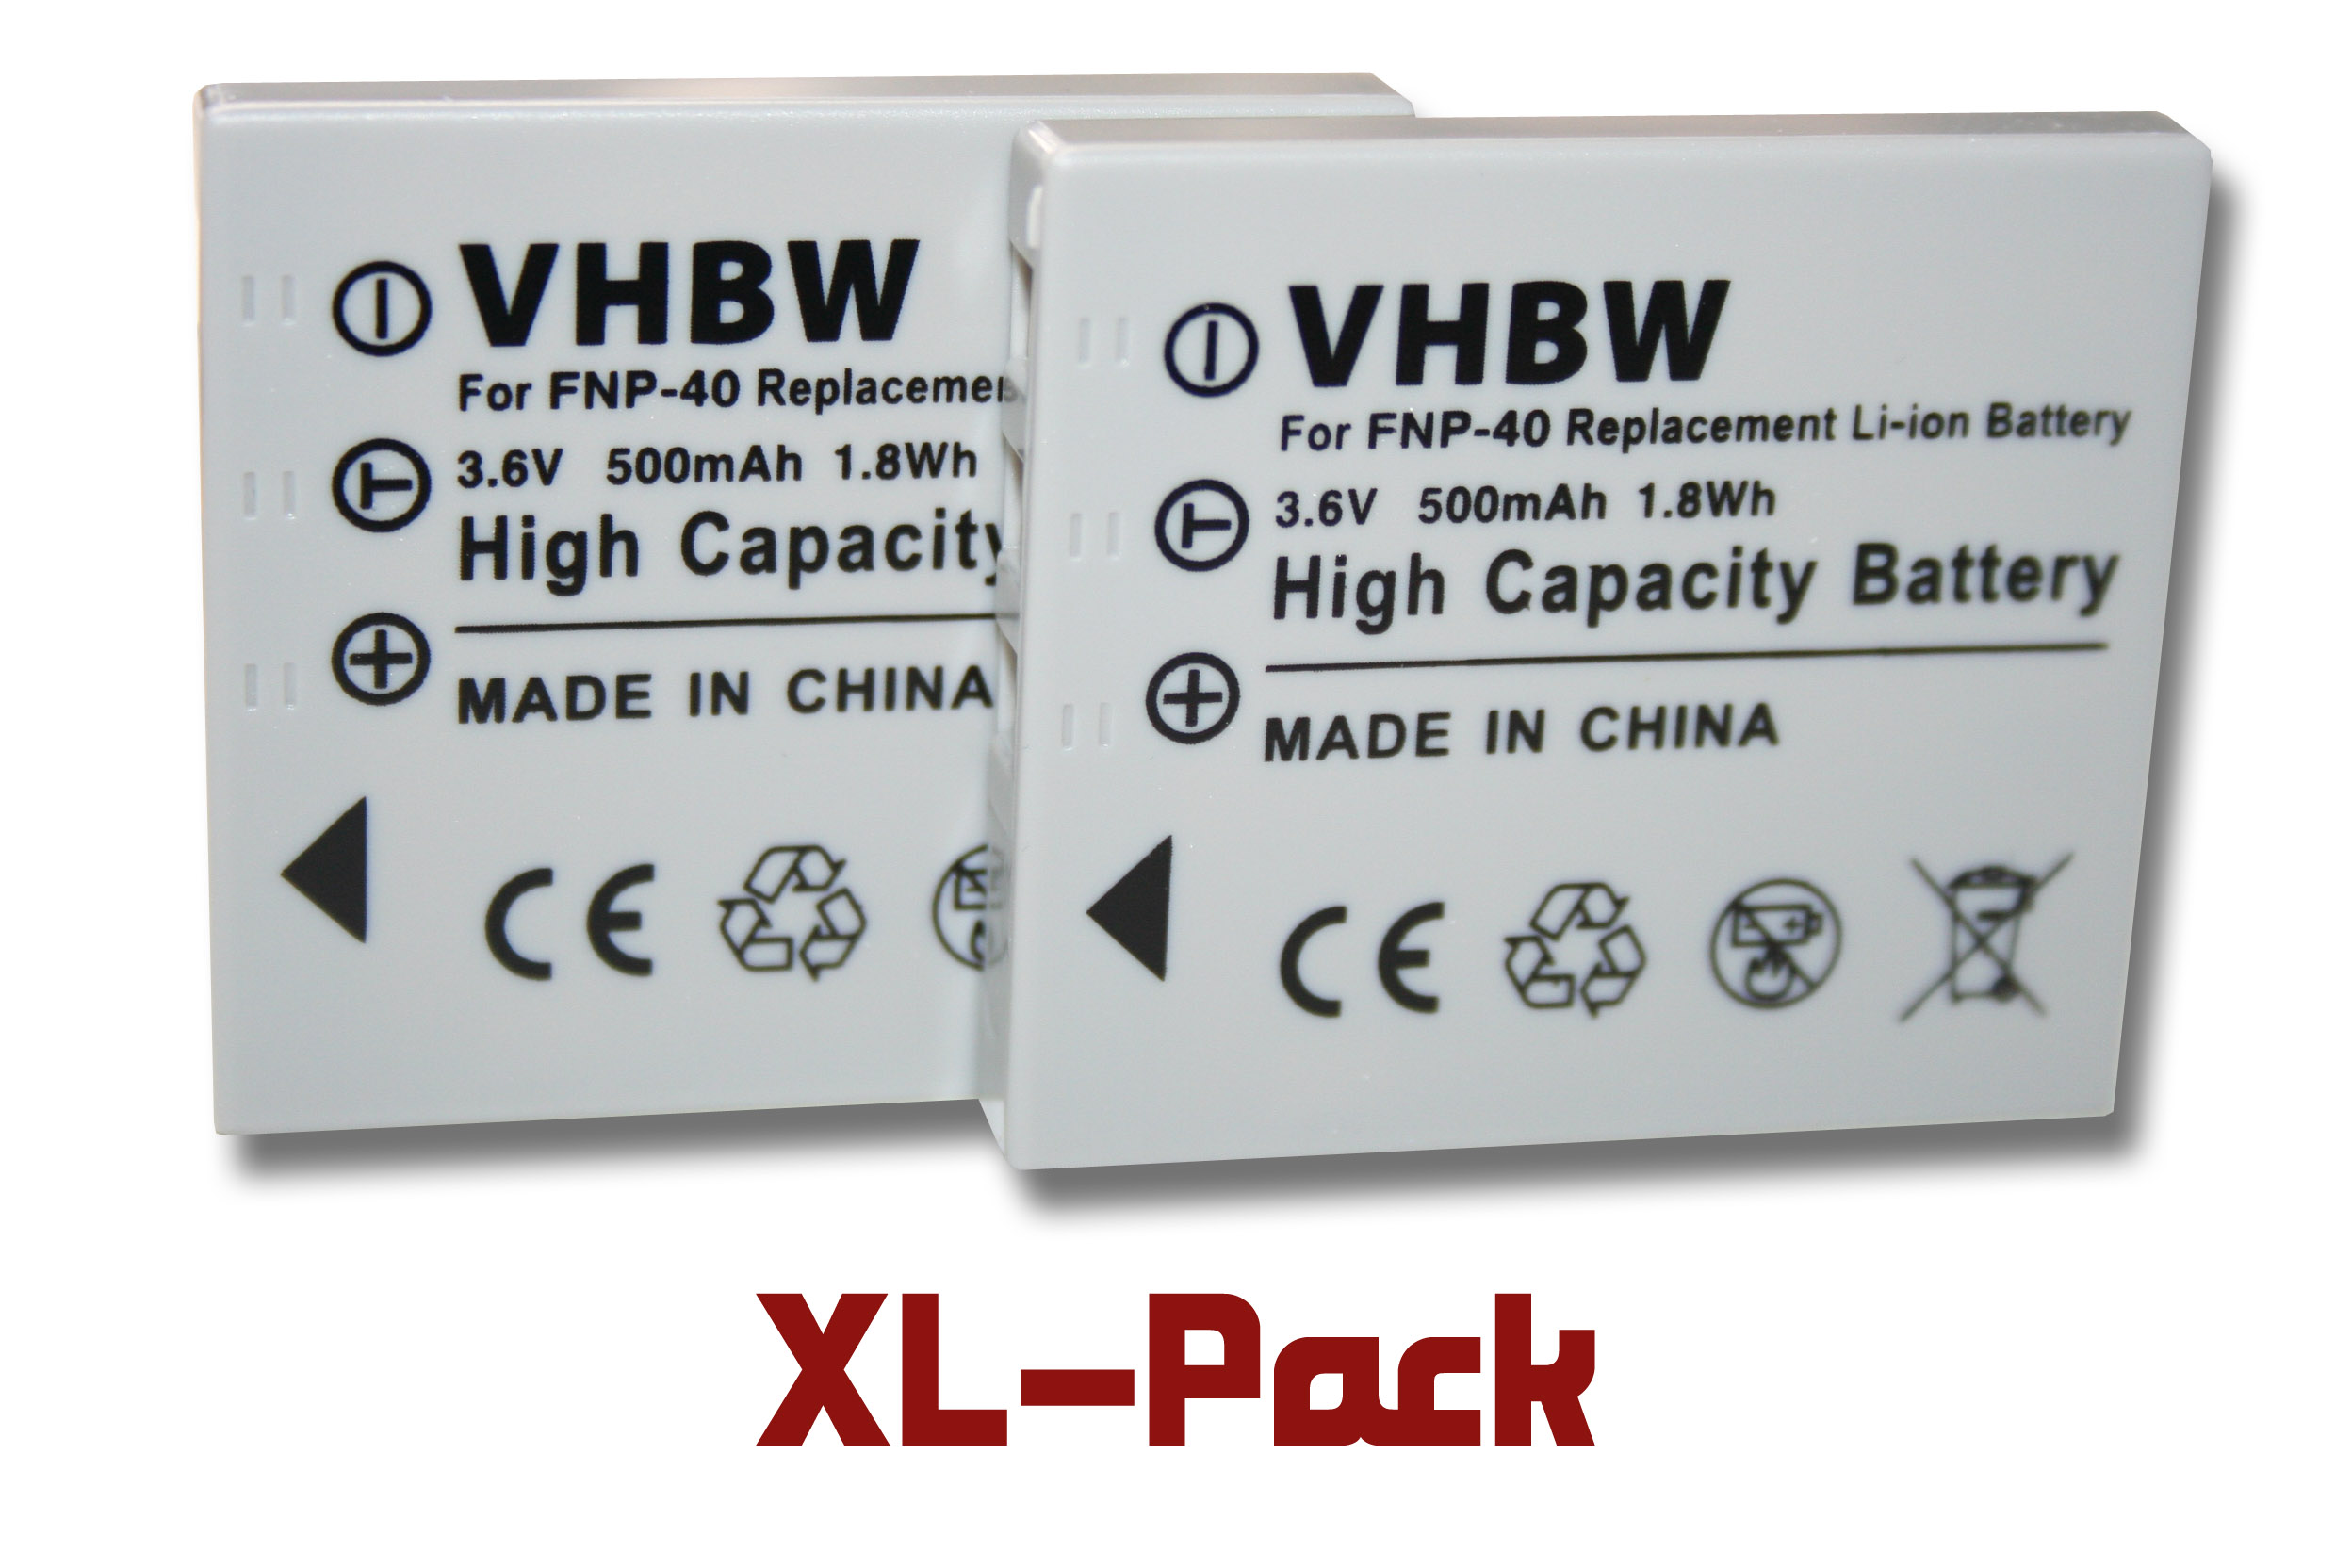 i5 VHBW 500 i70, L73, Kamera, i6, - Digimax i50, kompatibel Volt, OPS, L80, L50, L700, Li-Ion NV7 3.6 Samsung L60, mit NV3, L70, Akku